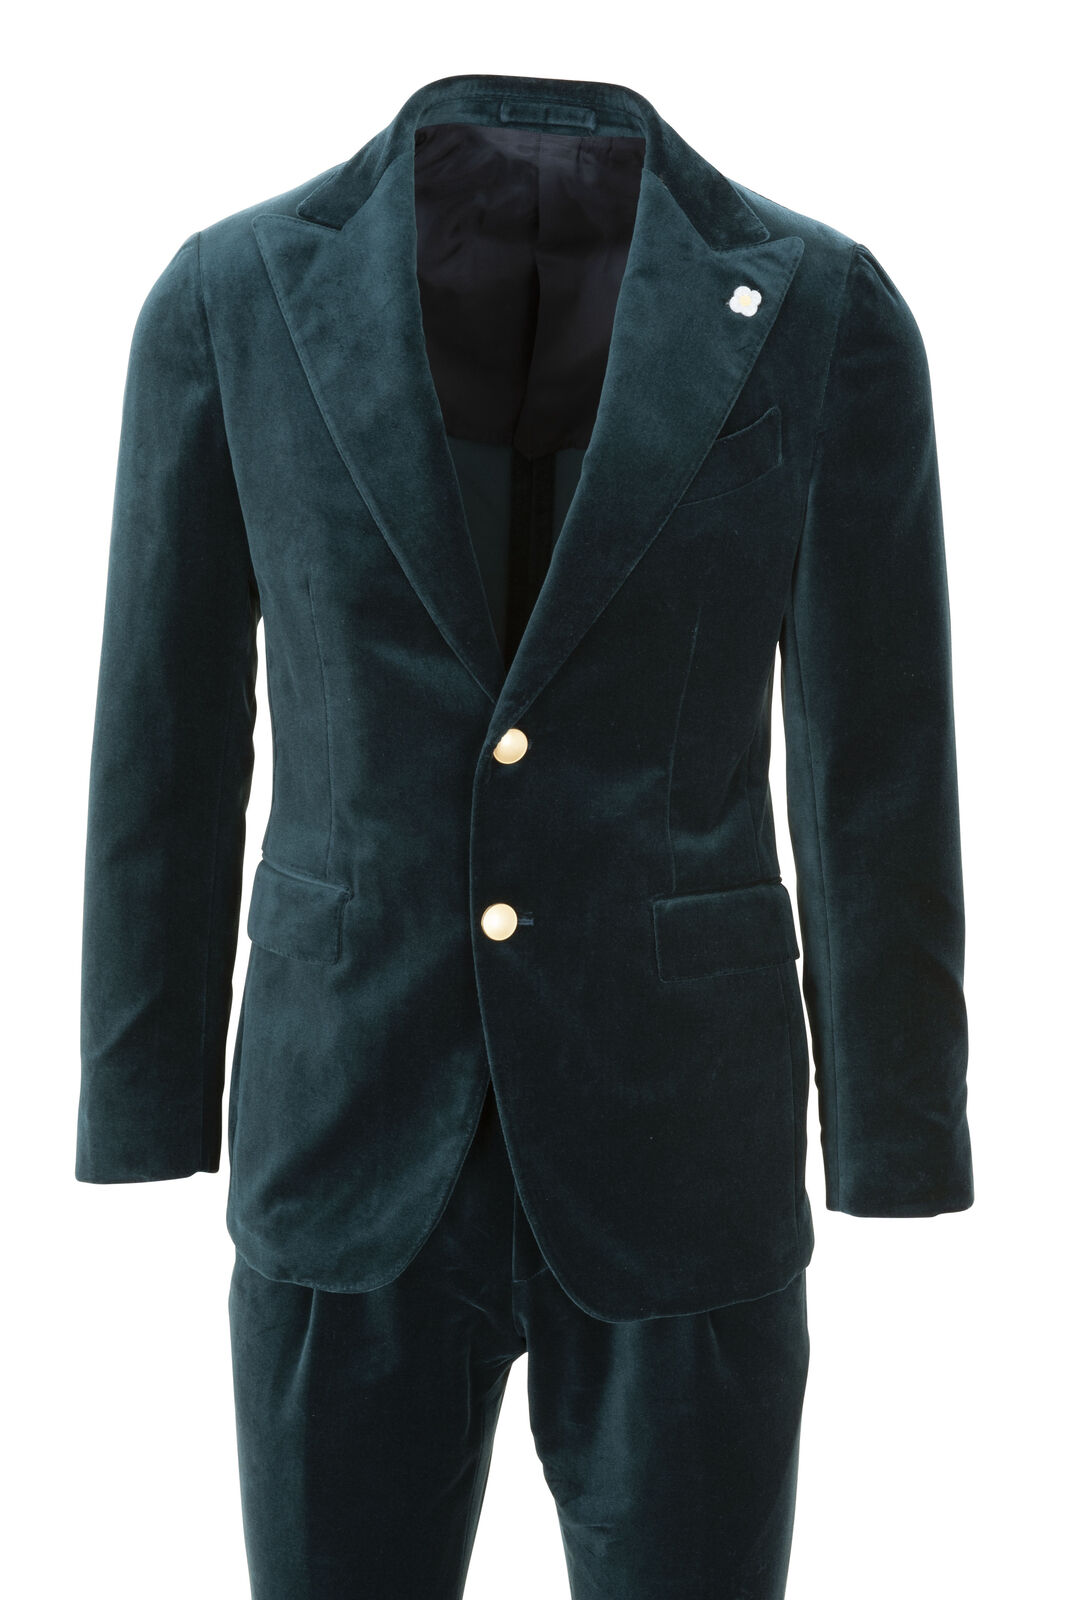 Lardini Suit Homme 48 vert foncé Taille normale Baumwolle Velours ABITO UOMO...